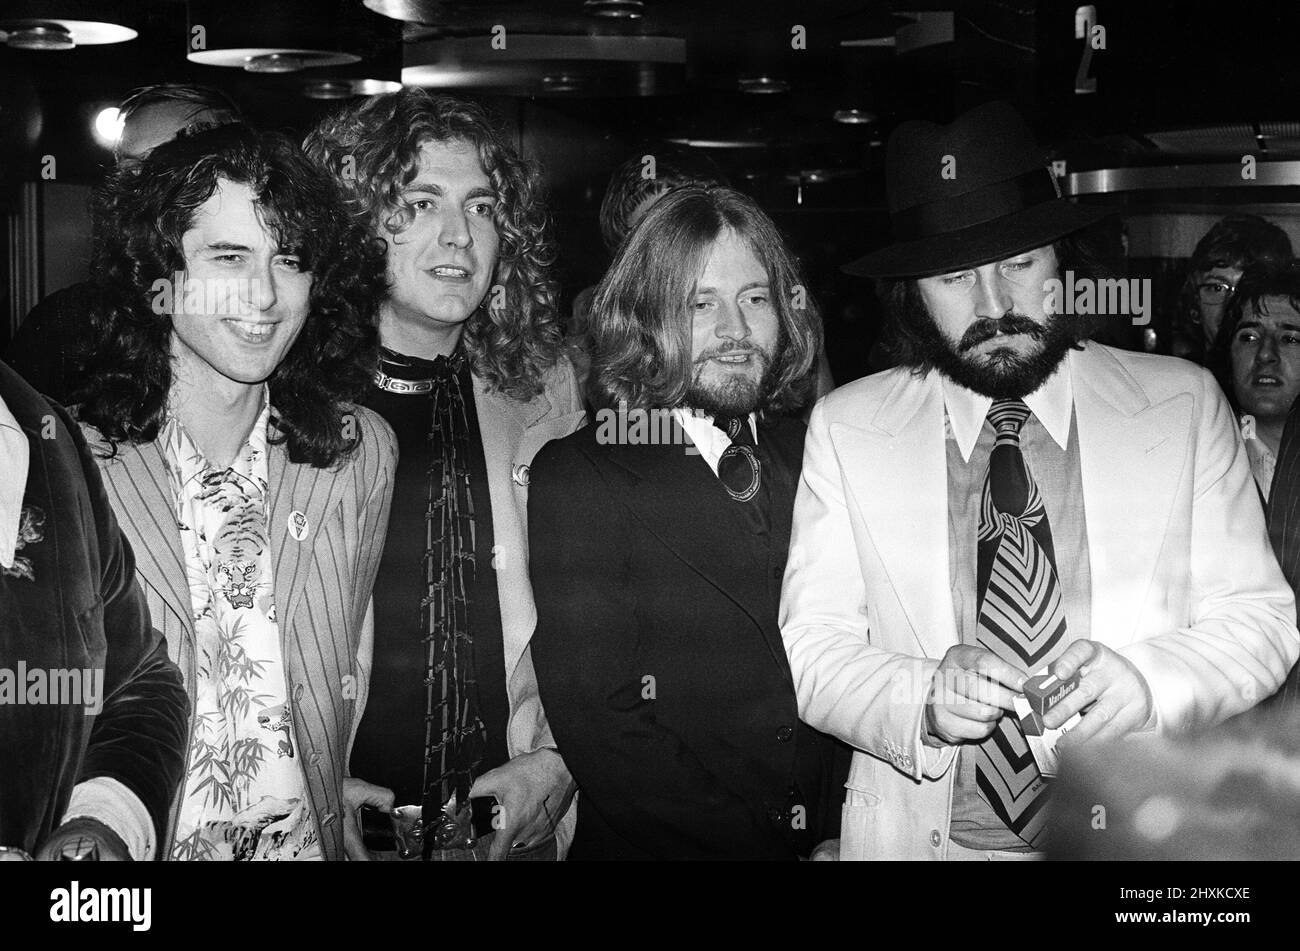 La rock band LED Zeppelin al Premier britannico del film da concerto "The Song remains the same". Da sinistra a destra, Jimmy Page, Robert Plant, John Paul Jones e John Bonham. 4th novembre 1976. Foto Stock